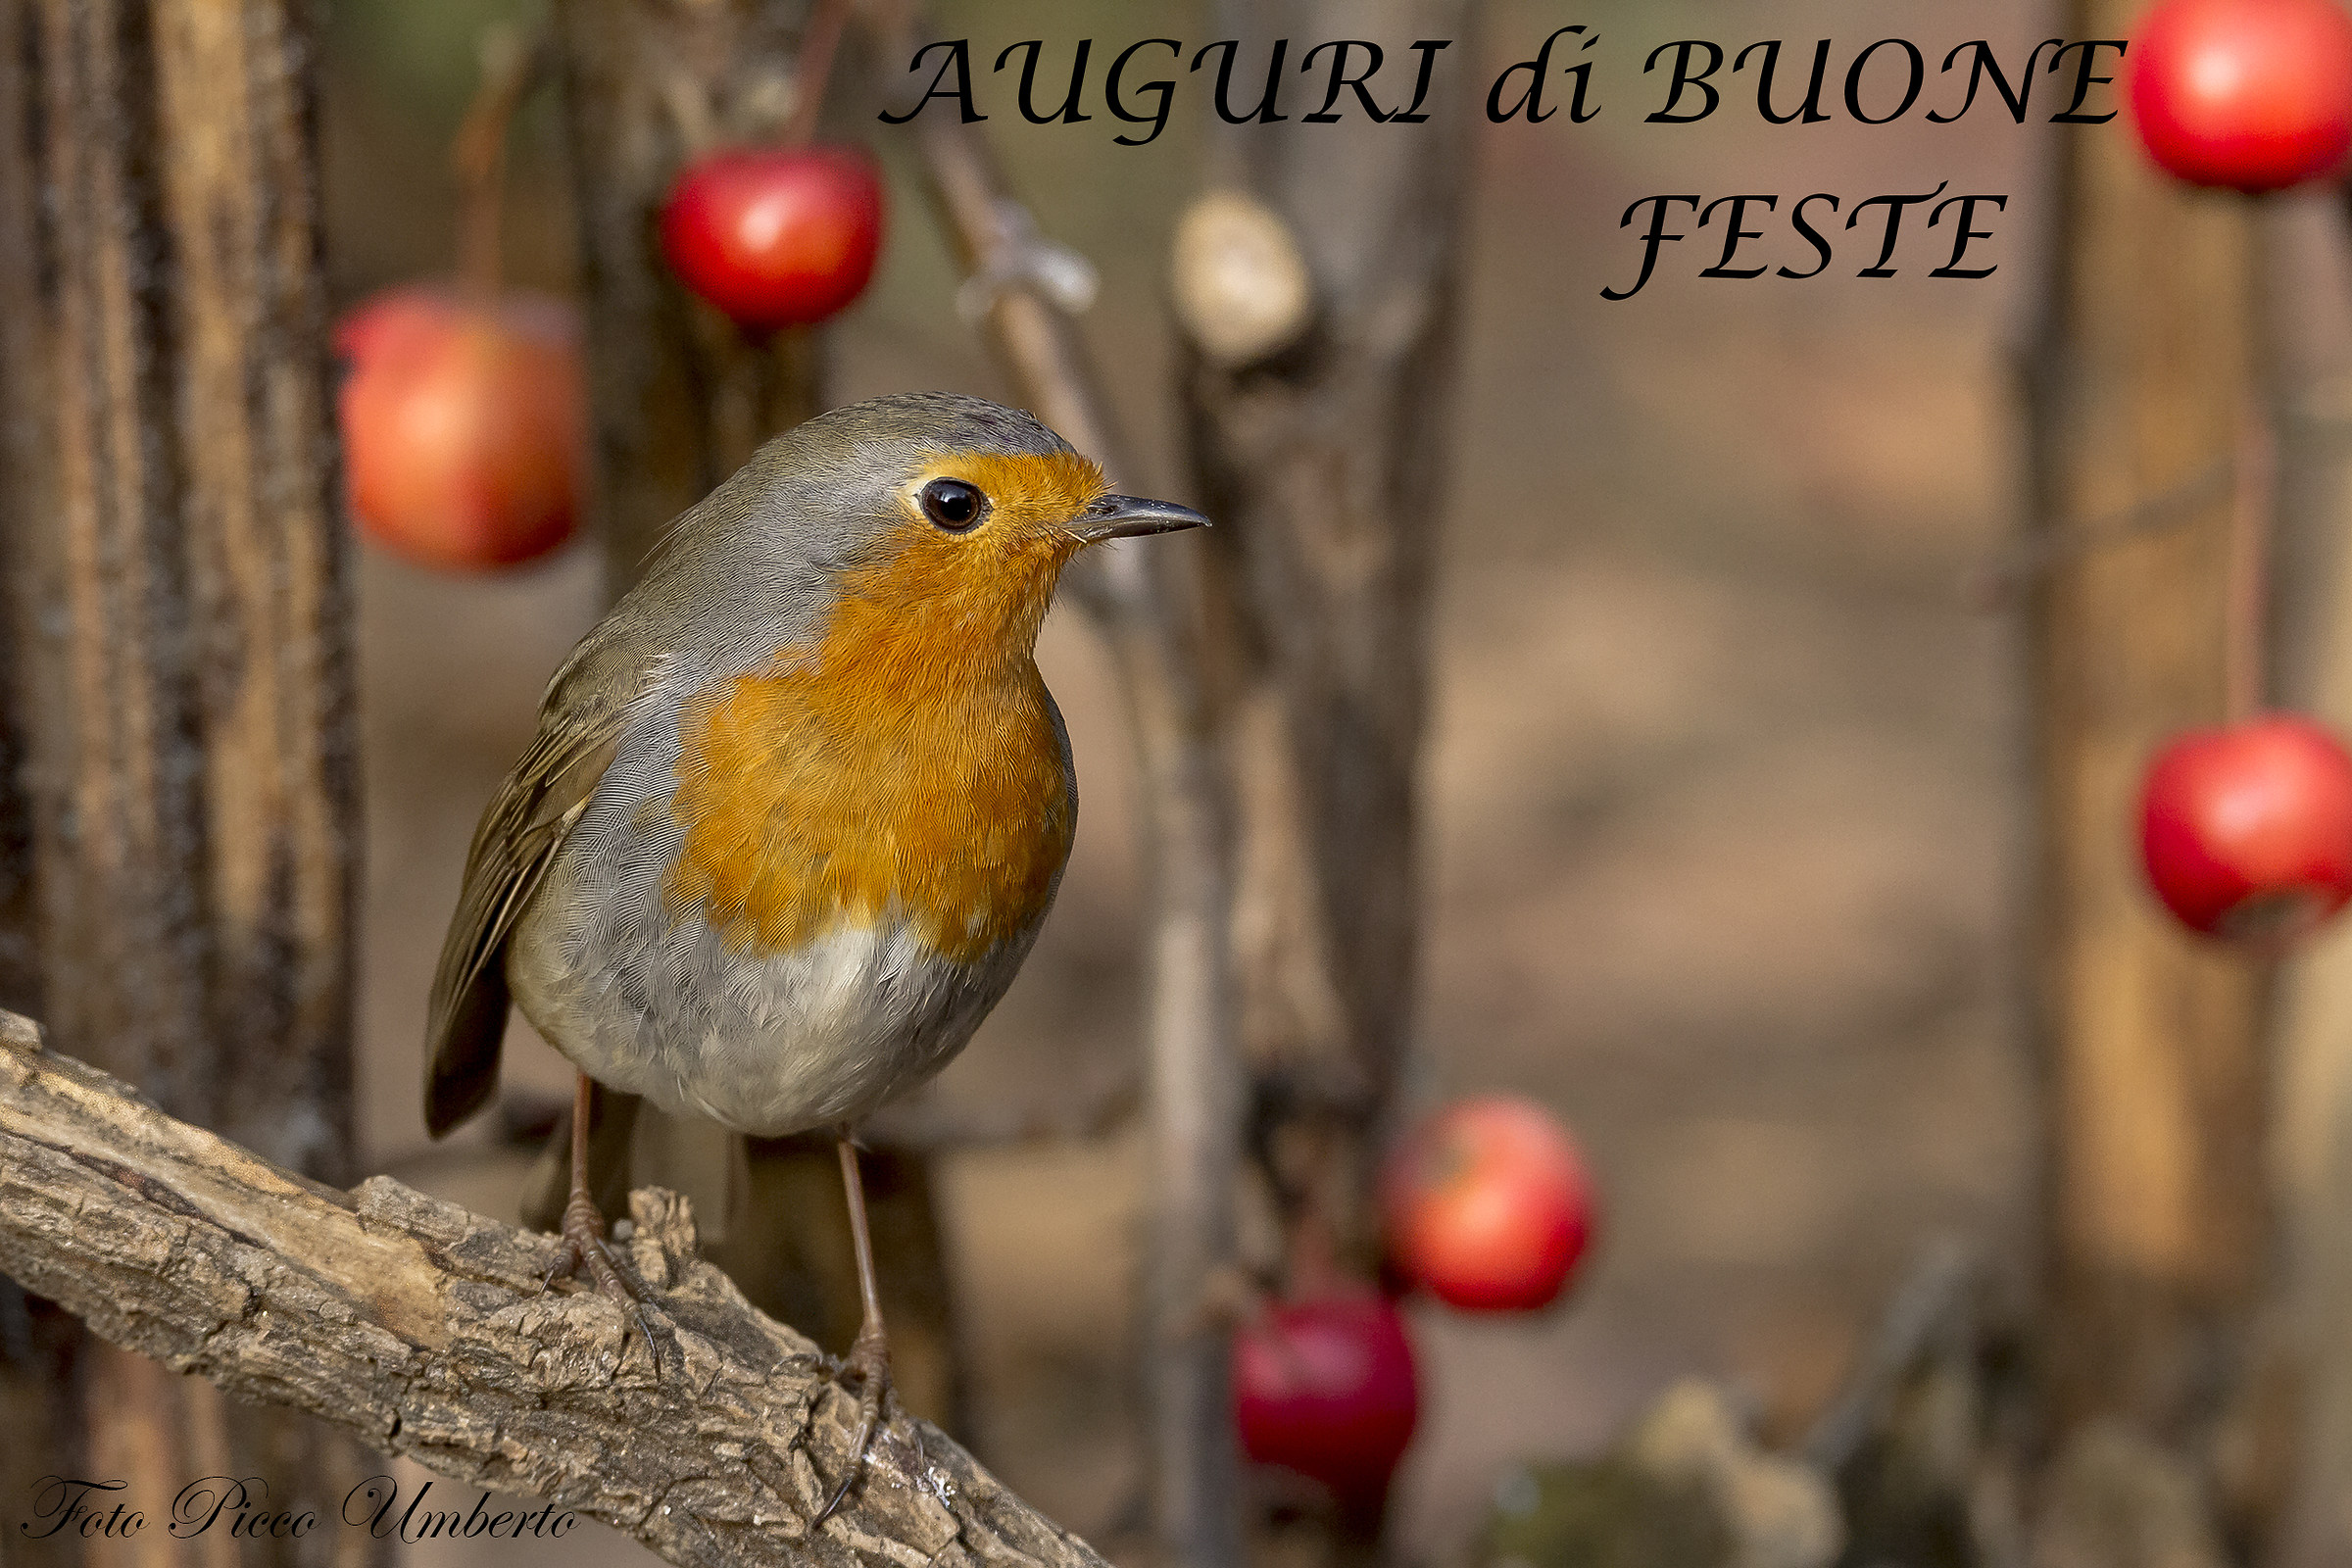 Robin of Happy Holidays at all Juzzini...